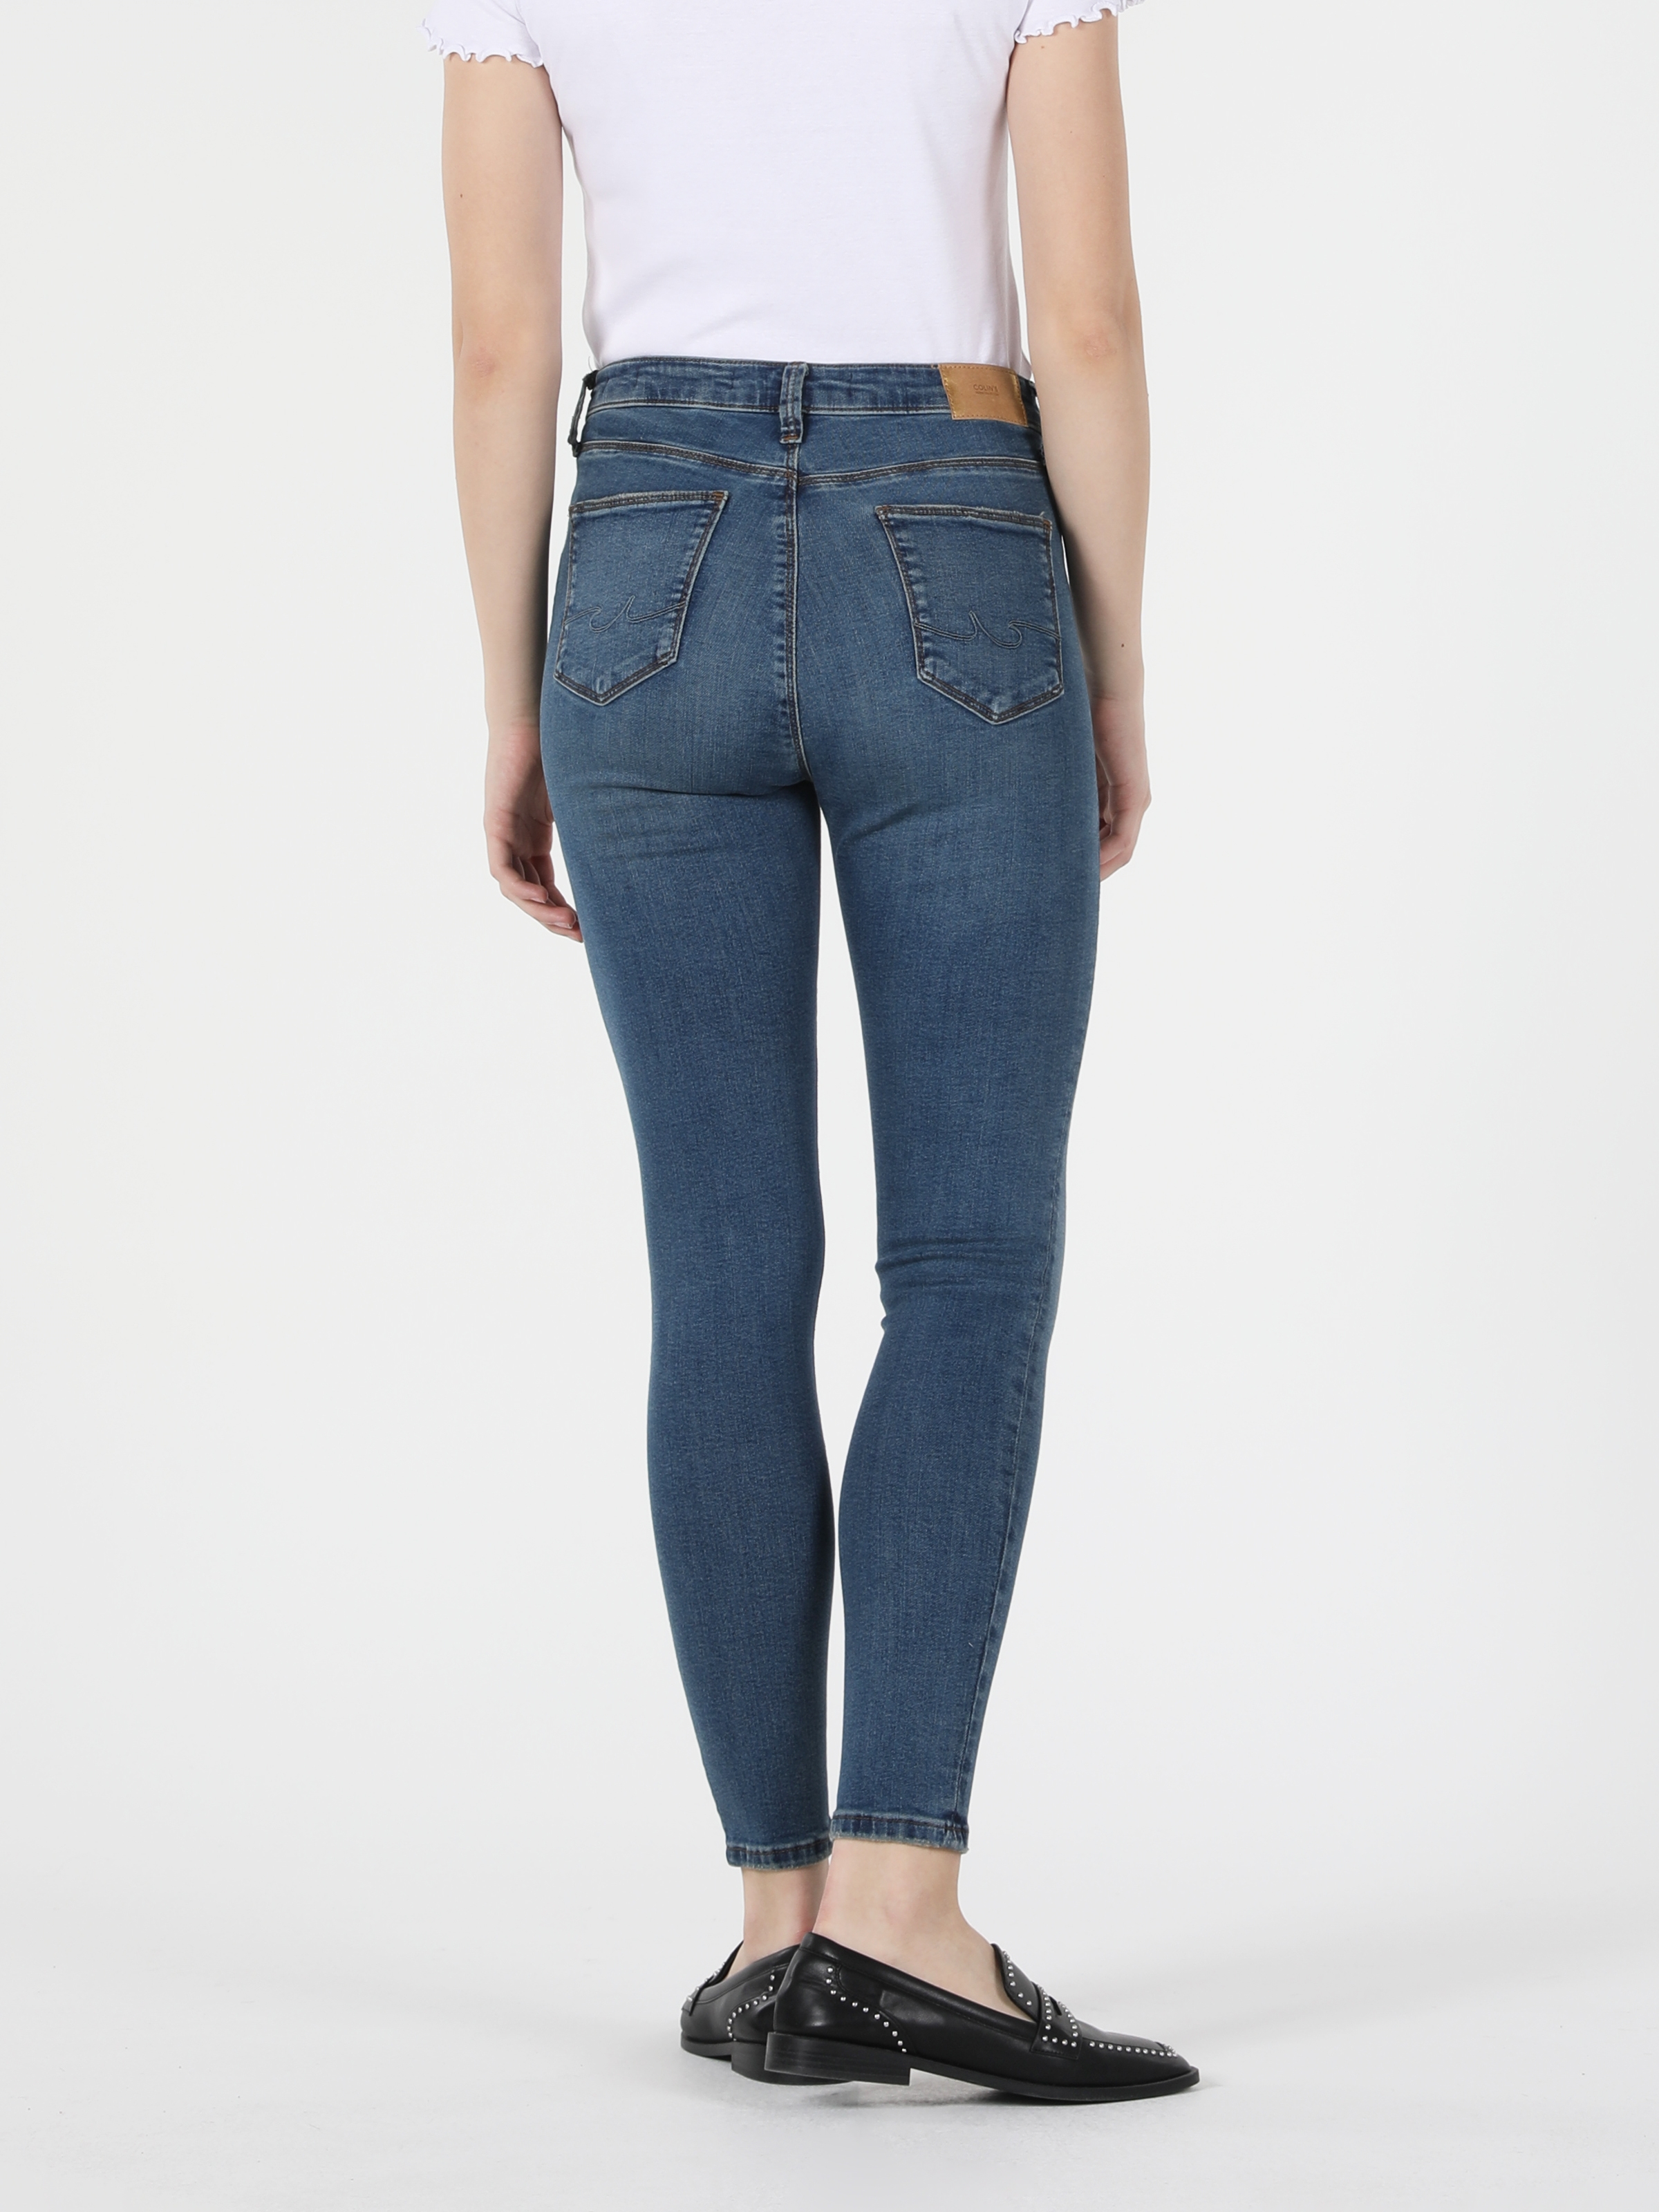 Afficher les détails de 759 Lara Pantalon En Jean Bleu Pour Femme, Coupe Super Slim, Taille Normale, Jambe Étroite